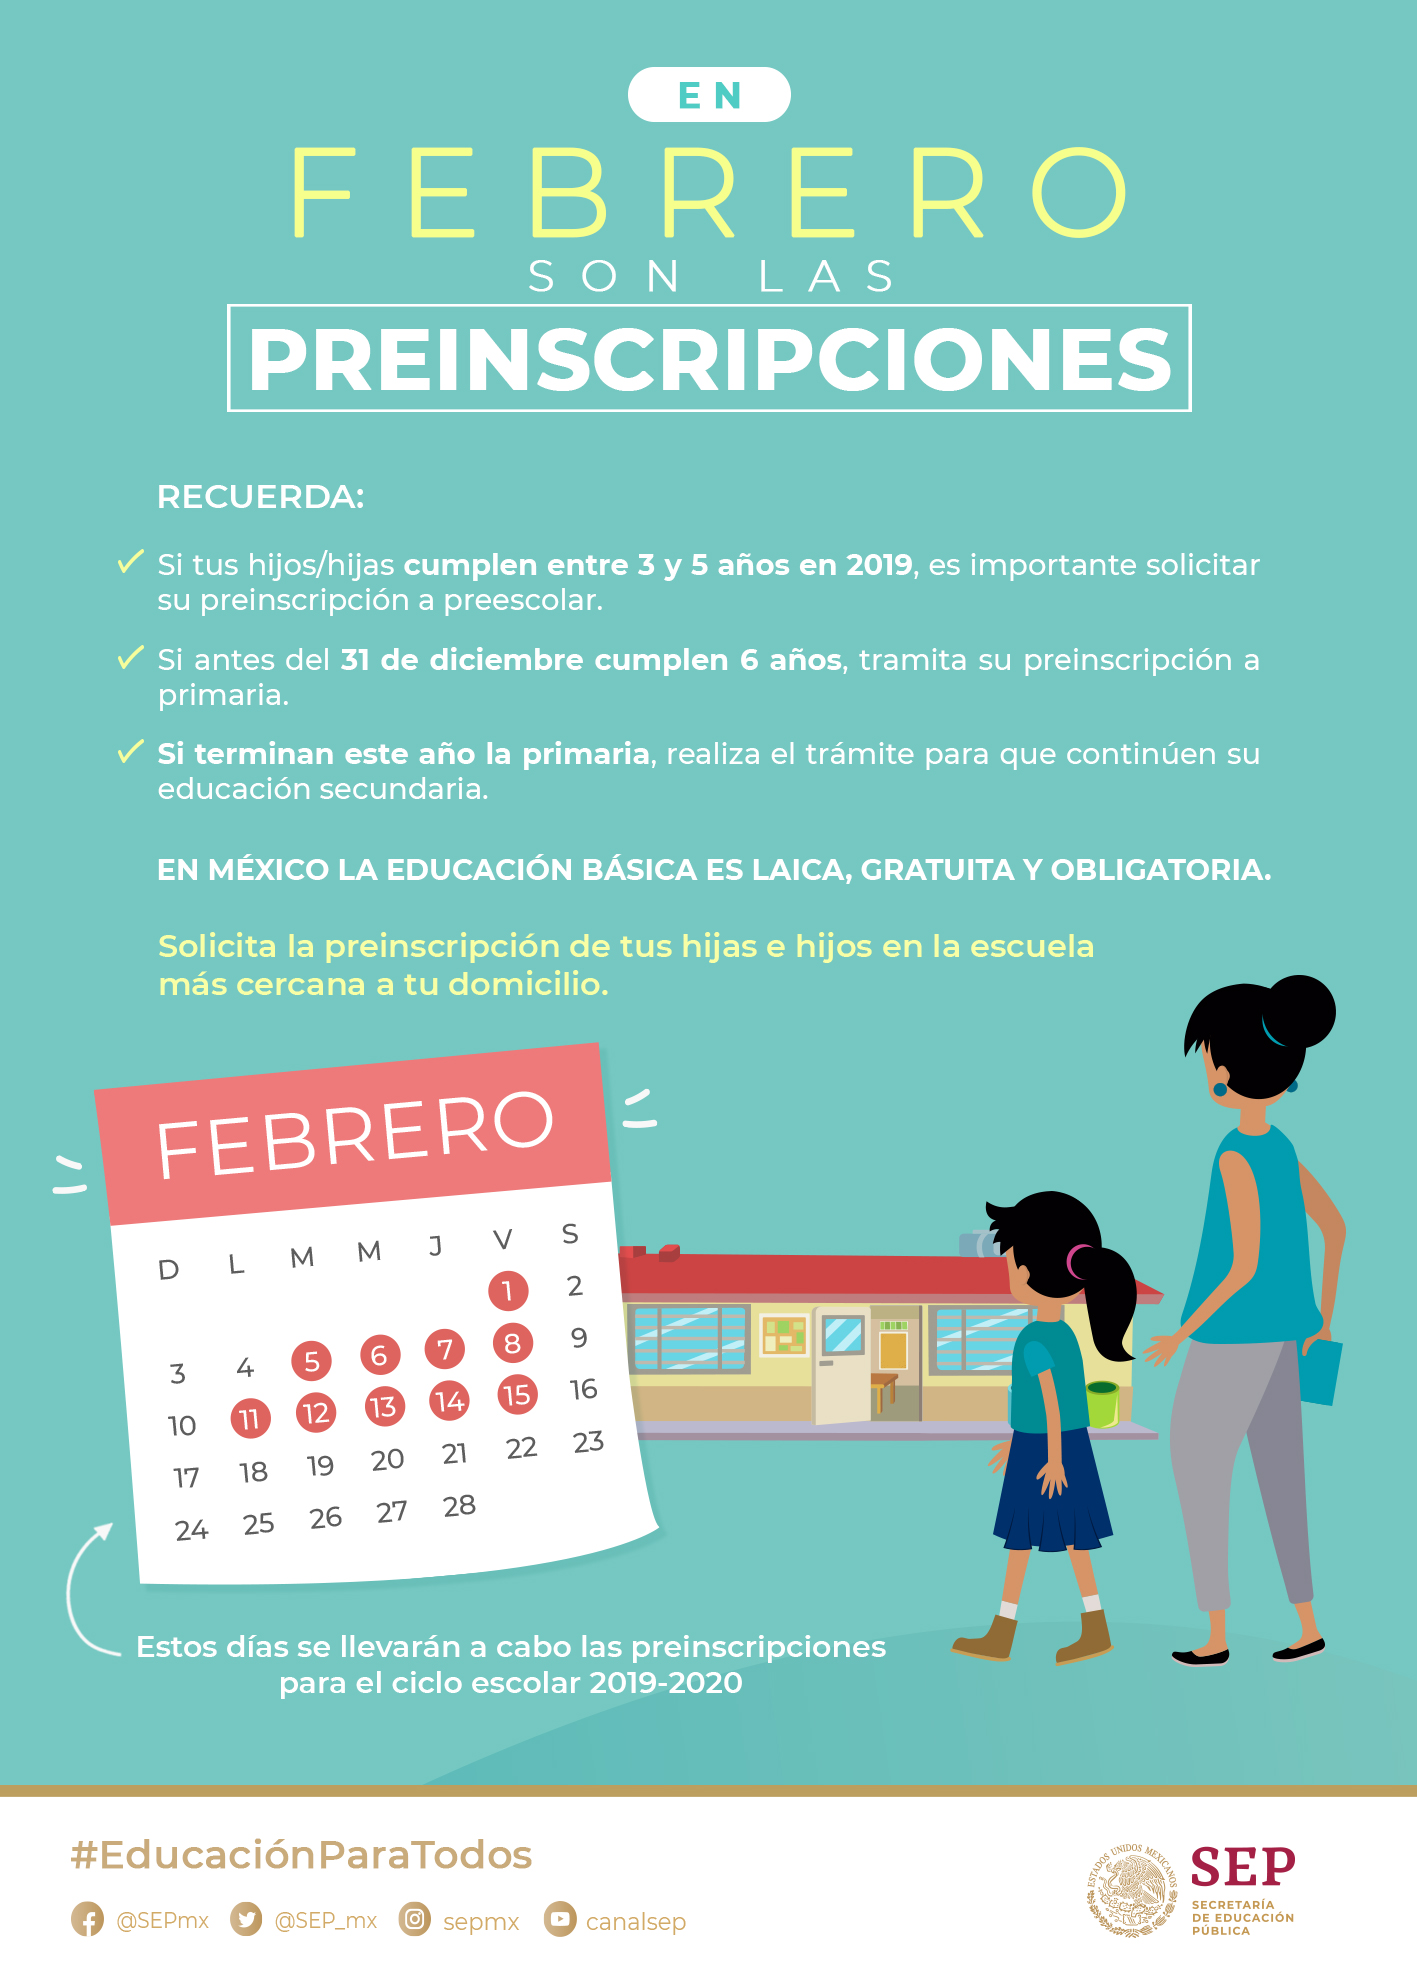 Calendarios Escolares 2019 2020 De La Sep 185 Y 195 Dias